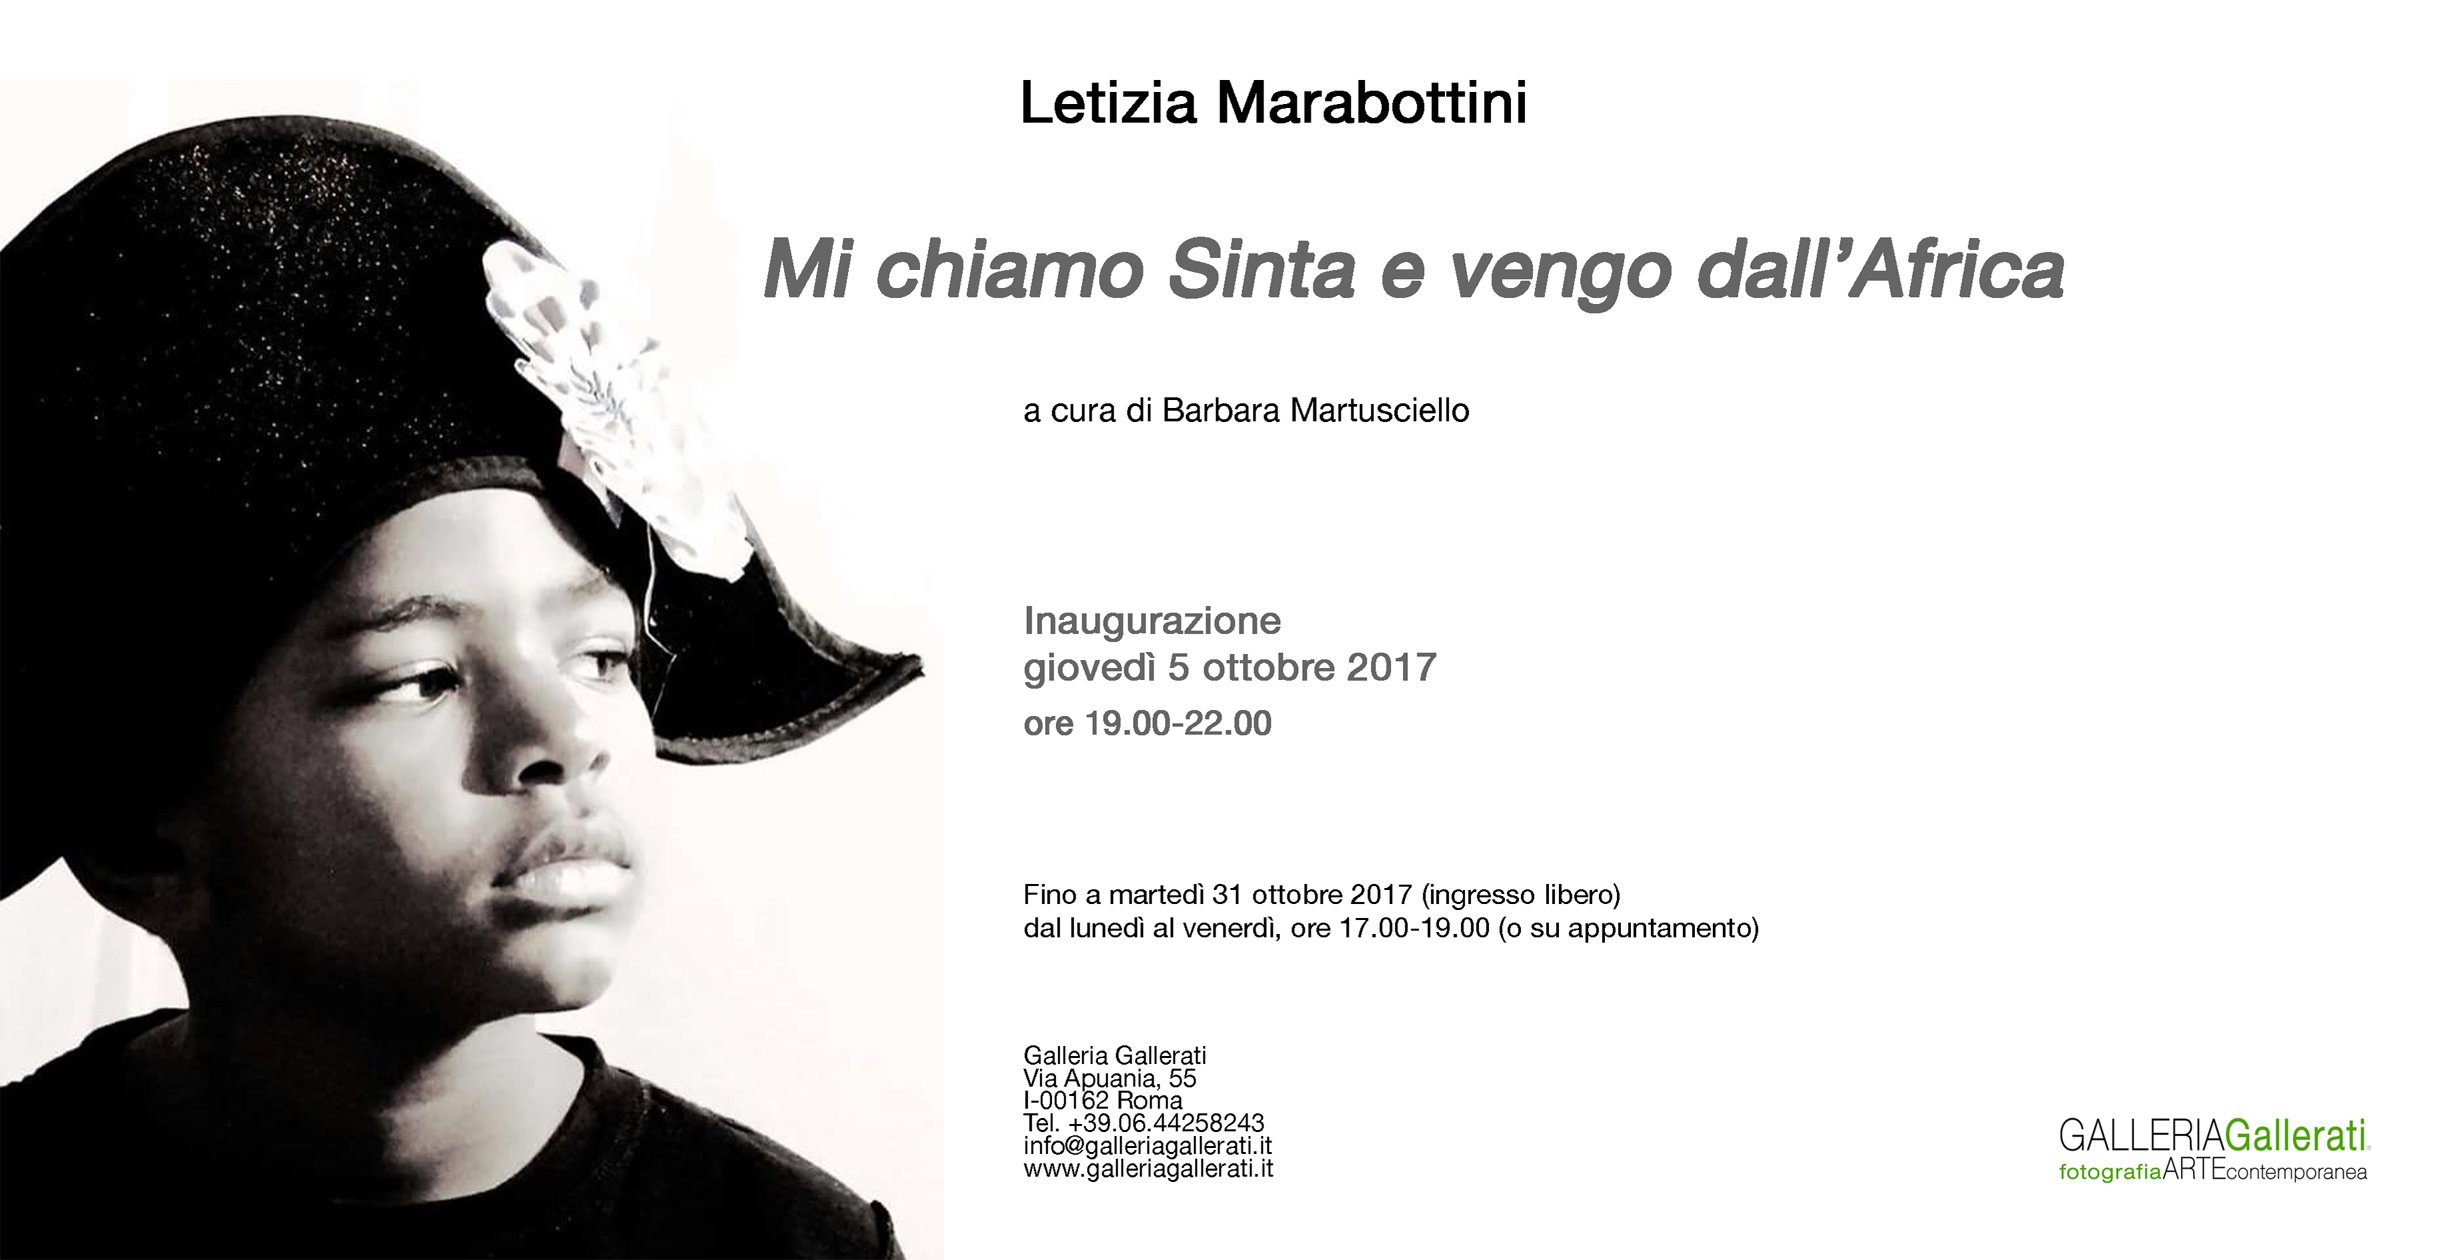 Letizia Marabottini, Mi chiamo Sinta e vengo dall'Africa